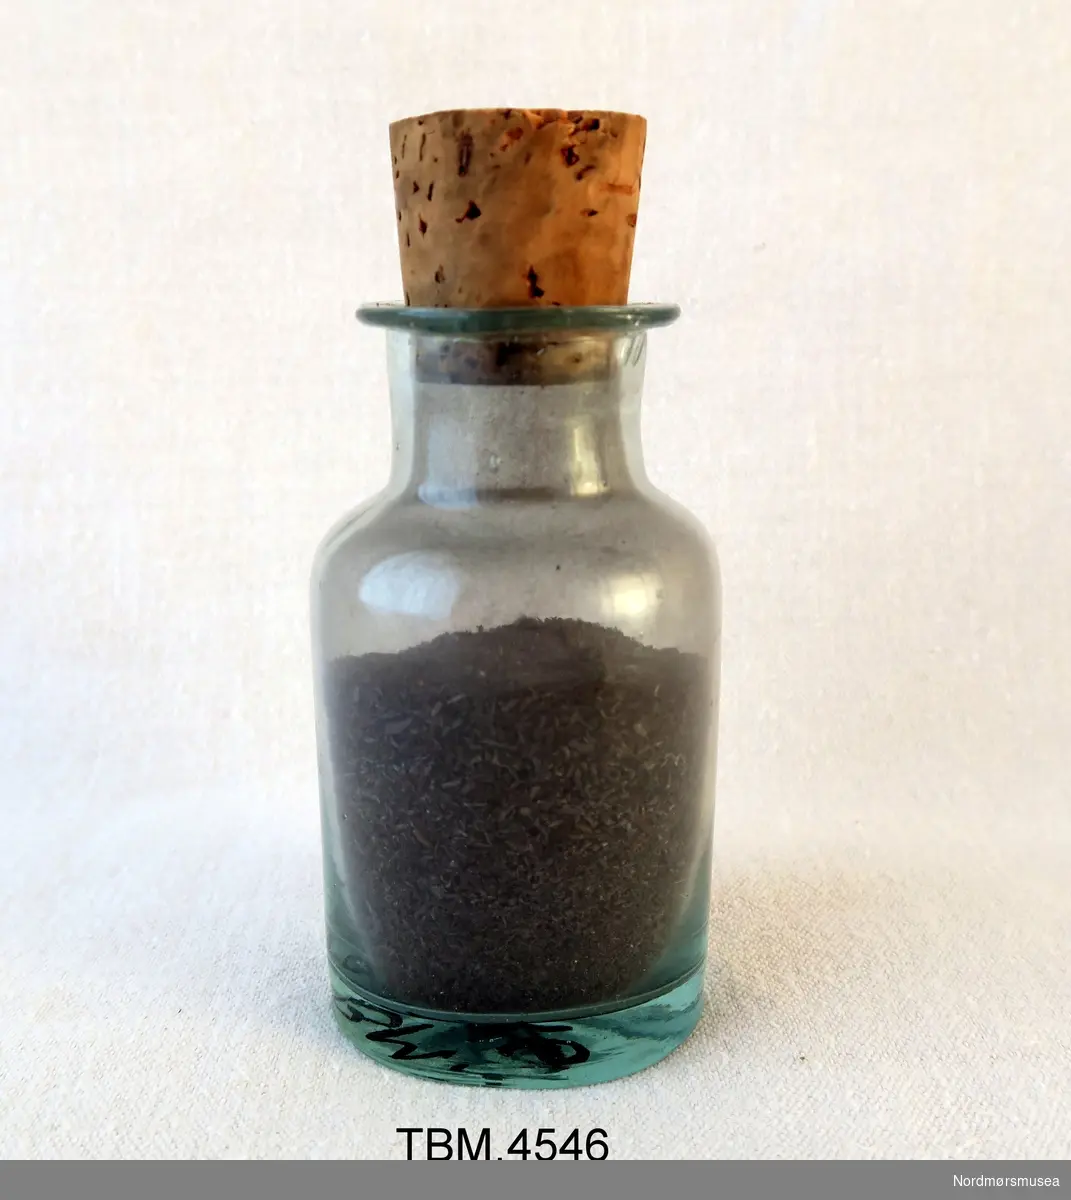 Klar glassflaske med kork. Korken har et hull slik at en kan helle jernfilsponet ut av flasken.
Innhold: Jernfilspon.